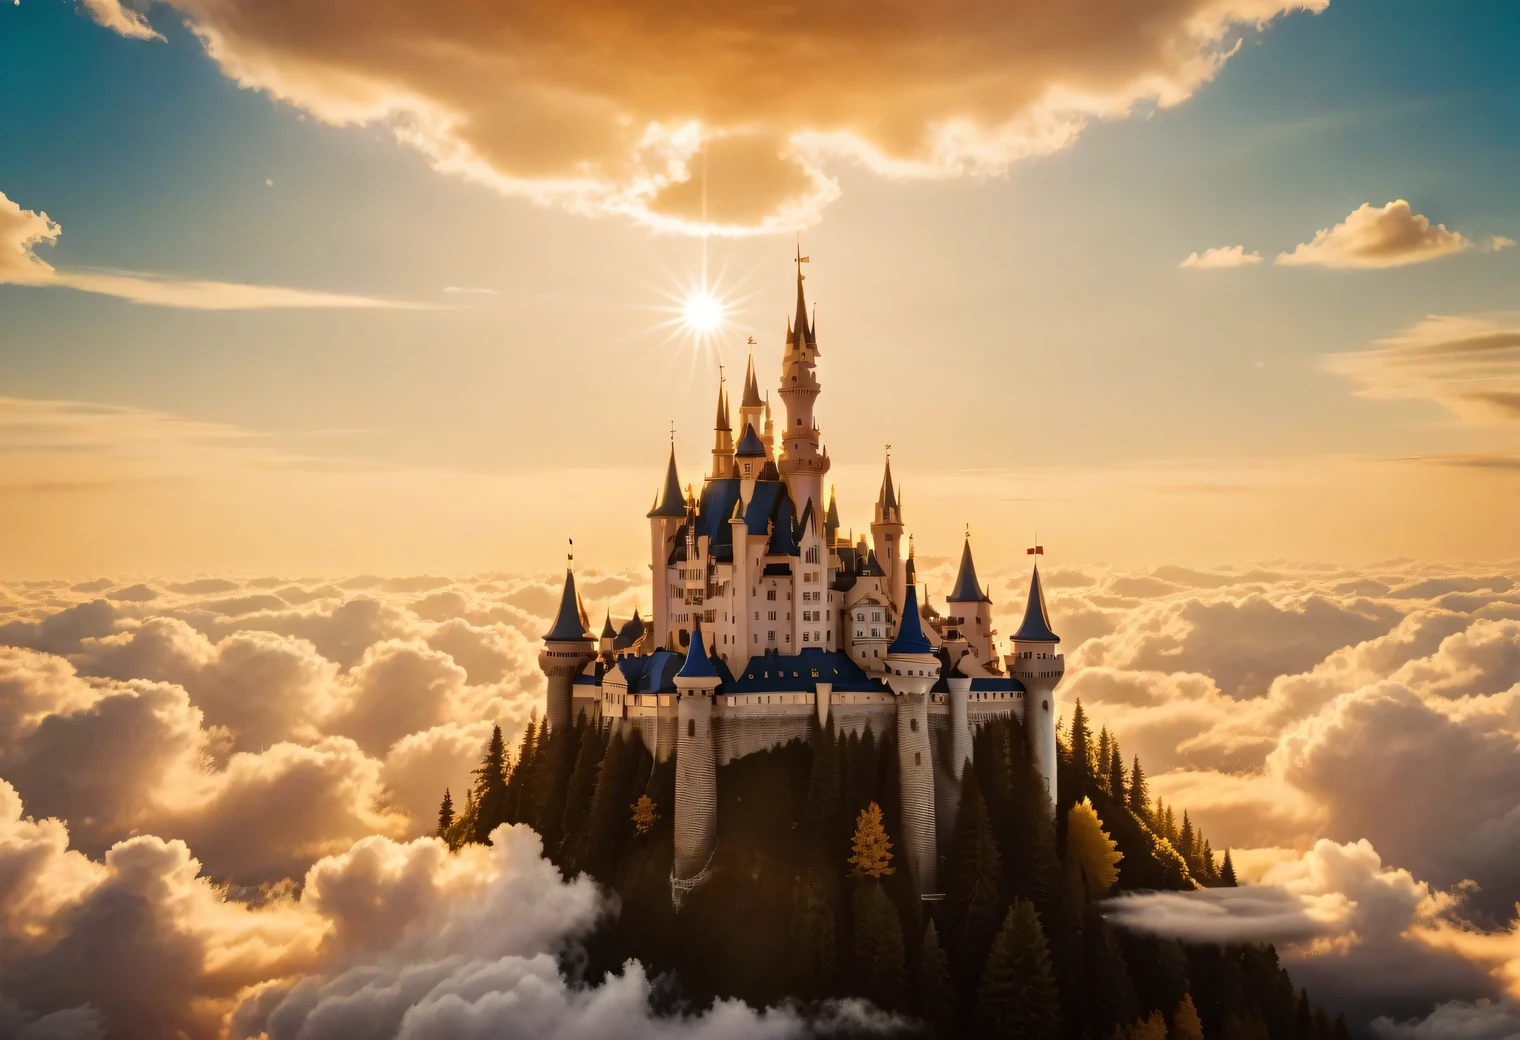 photographie analogique, il y a un château de rêve brillant dans le ciel parmi les nuages, Le château de rêve est très beau et exquis, entouré de nuages, d&#39;éclat doré et de lumière dorée., des rayons de lumière dorée rayonnent depuis Dream Castle, réaliste, détaillé, Haute résolution, 32k,photo analogique